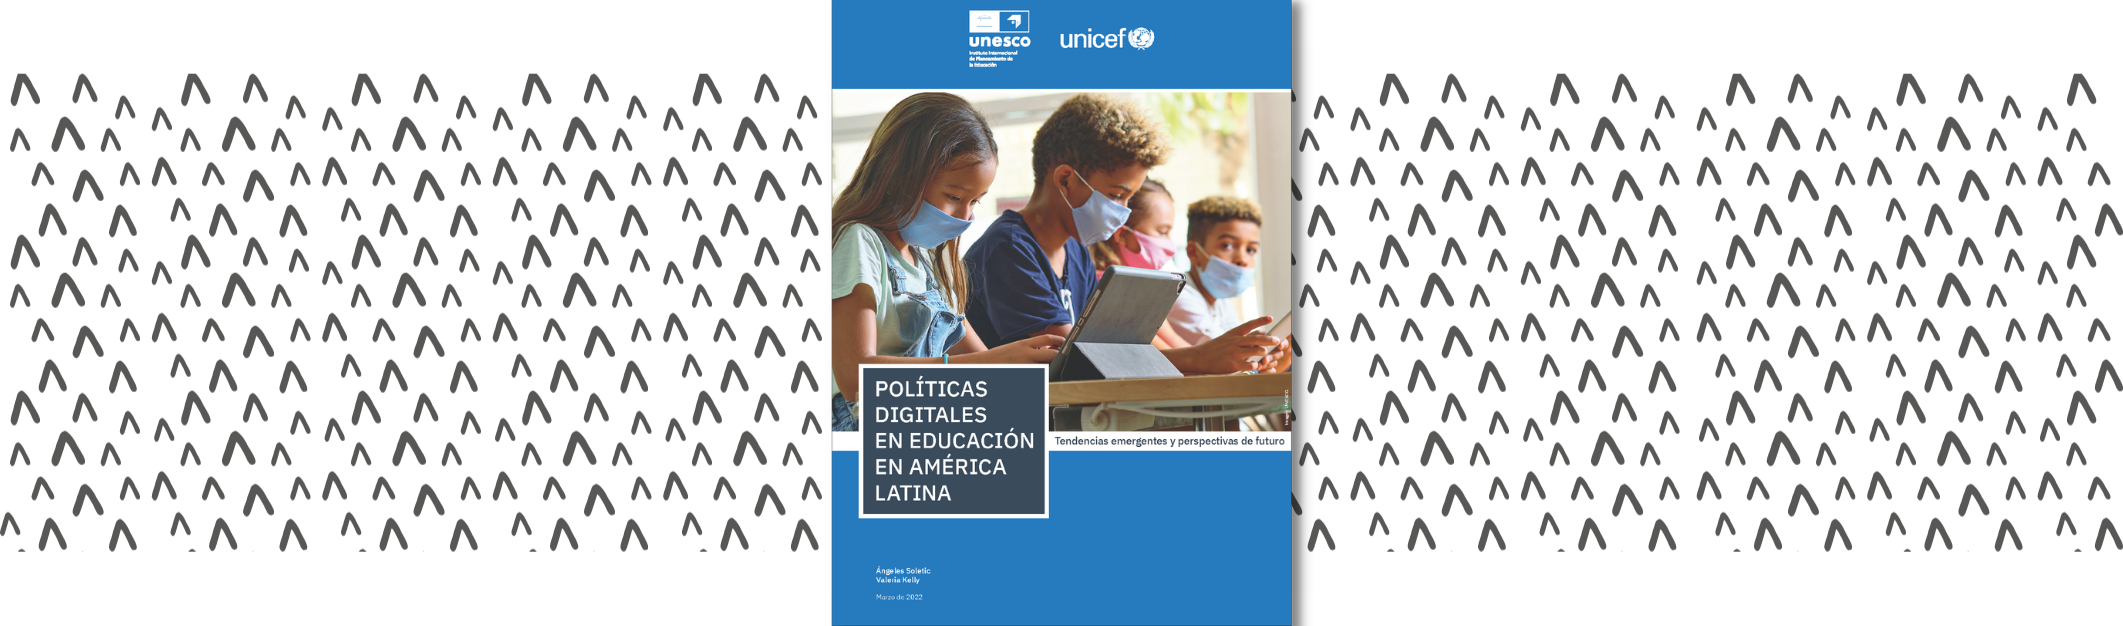 politicas-digitales-educacion-america-latina